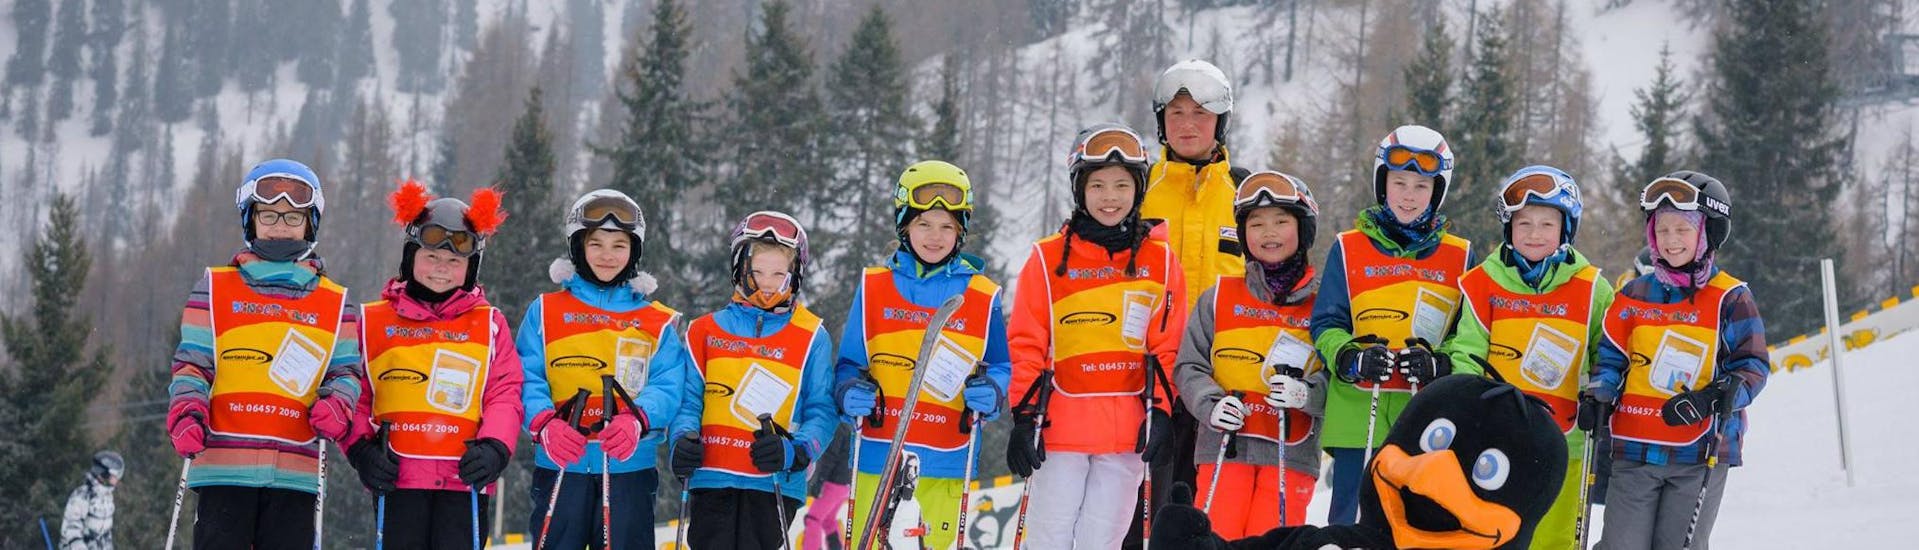 Skilessen voor kinderen en tieners (6-14 jaar) - Gevorderden.